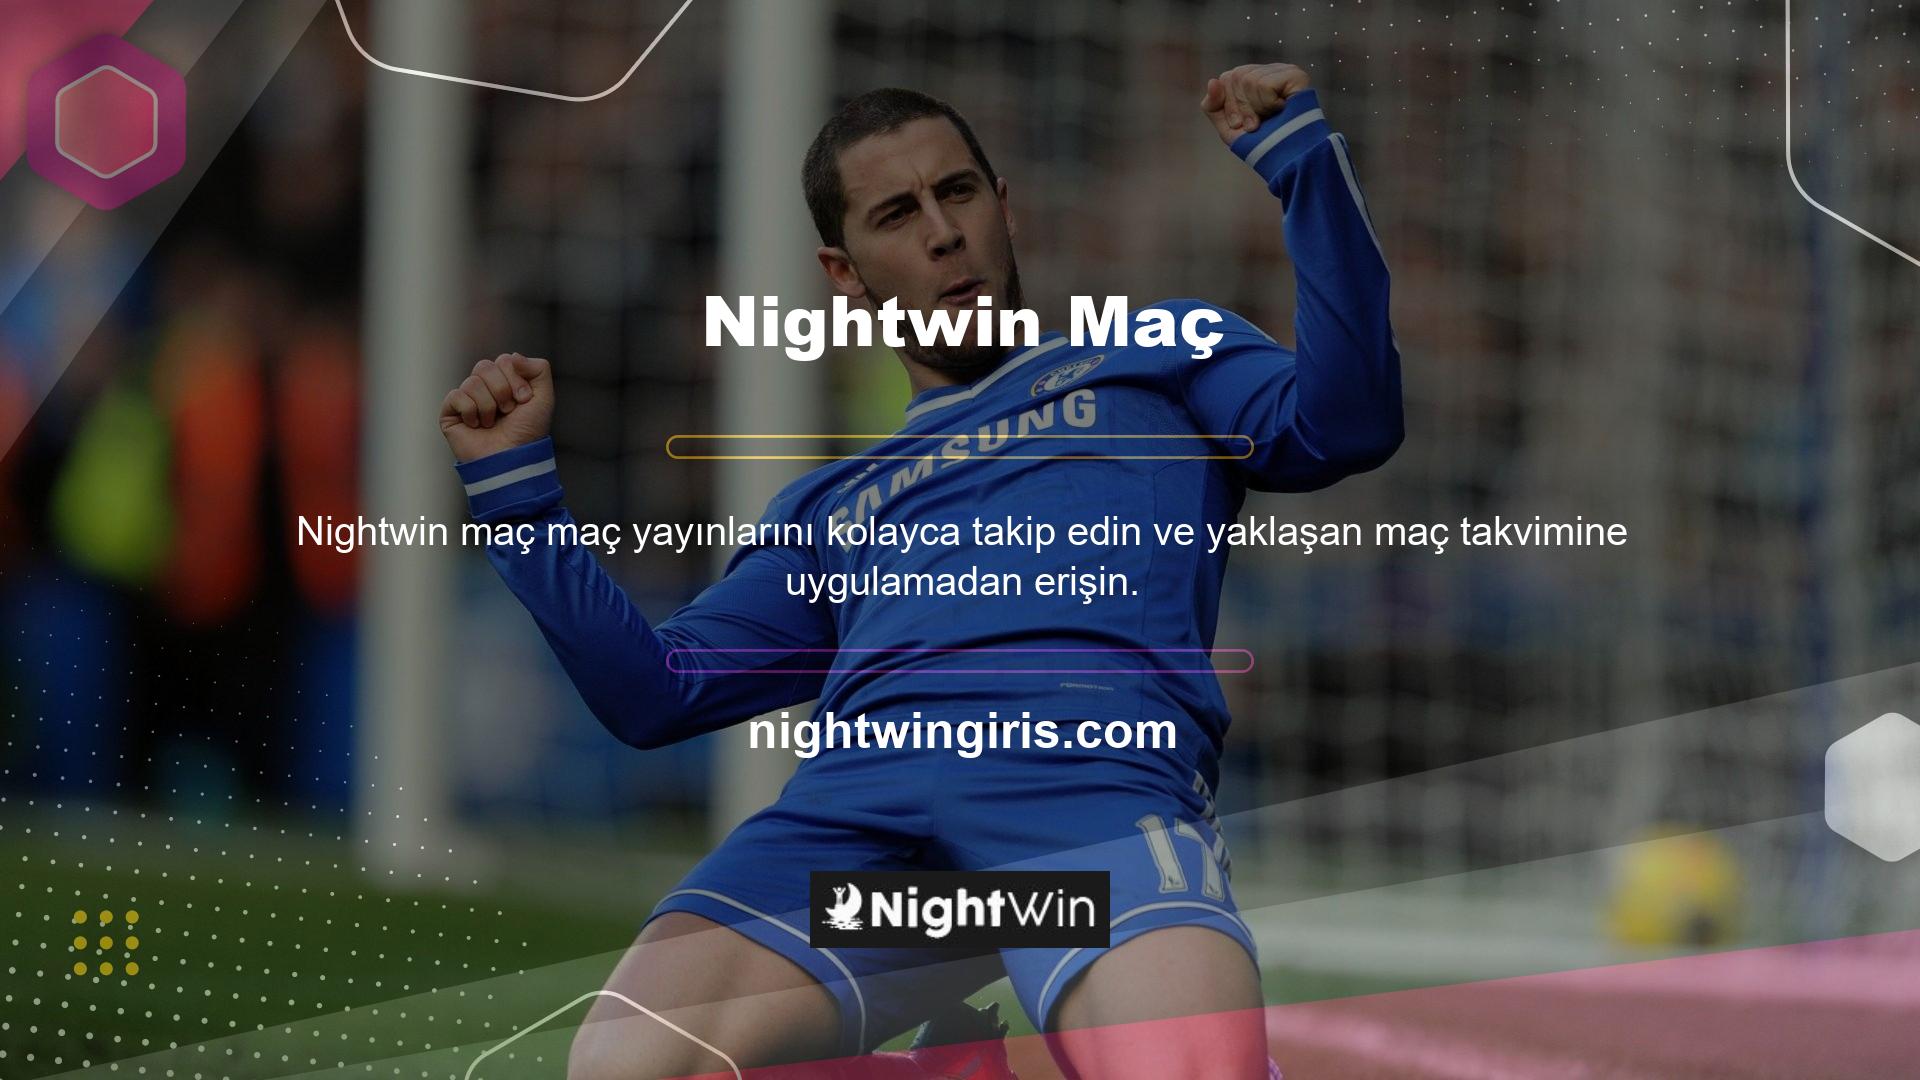 Nightwin TV seçeneği ile daha da keyifli bir deneyim için yaklaşan maçları izleyebilir veya oynamak istediğiniz oyunlar için kupon oluşturabilirsiniz